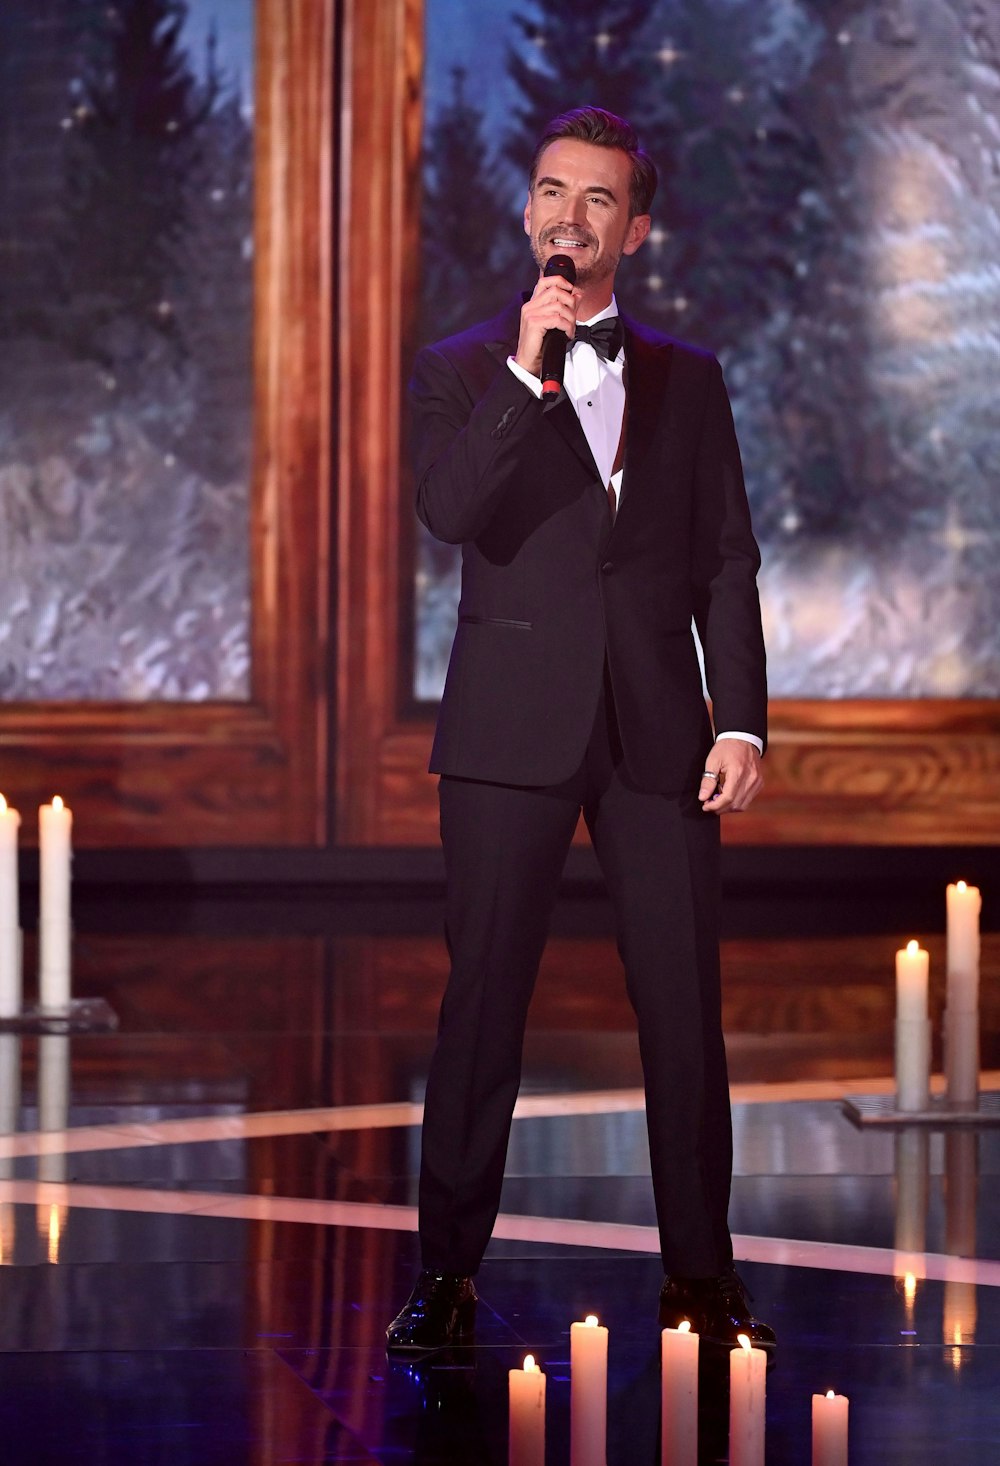 Sänger Florian Silbereisen steht bei der TV-Spendengala „Ein Herz für Kinder“ auf der Bühne.